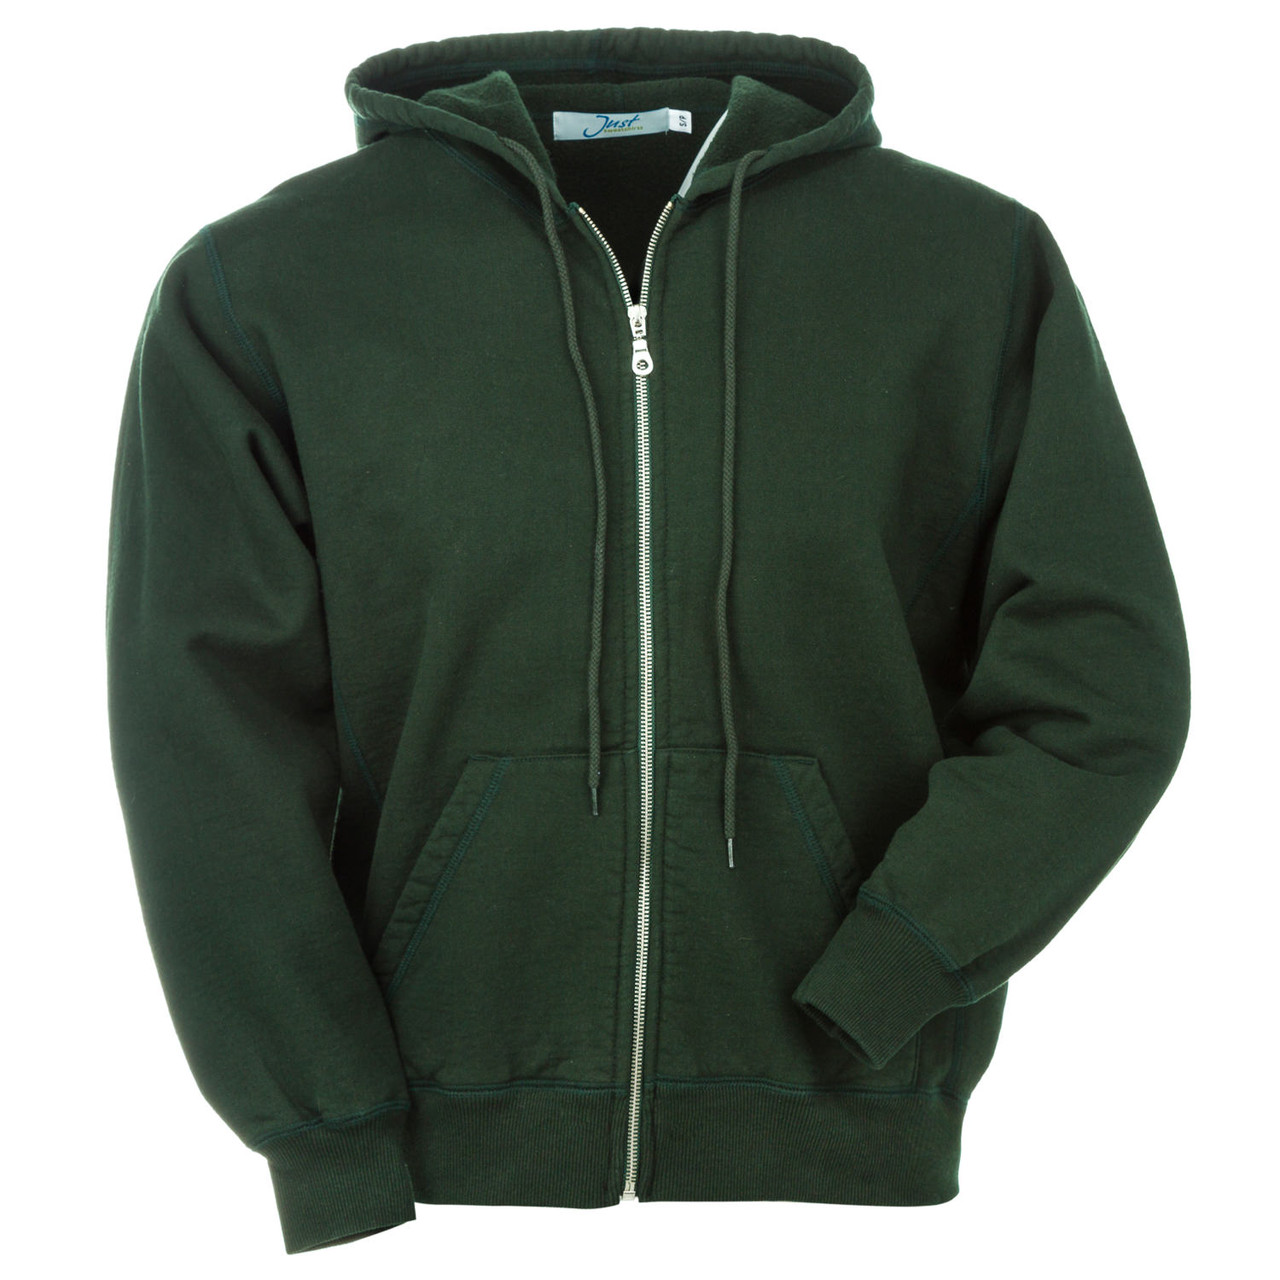 Green Pullover Jacket